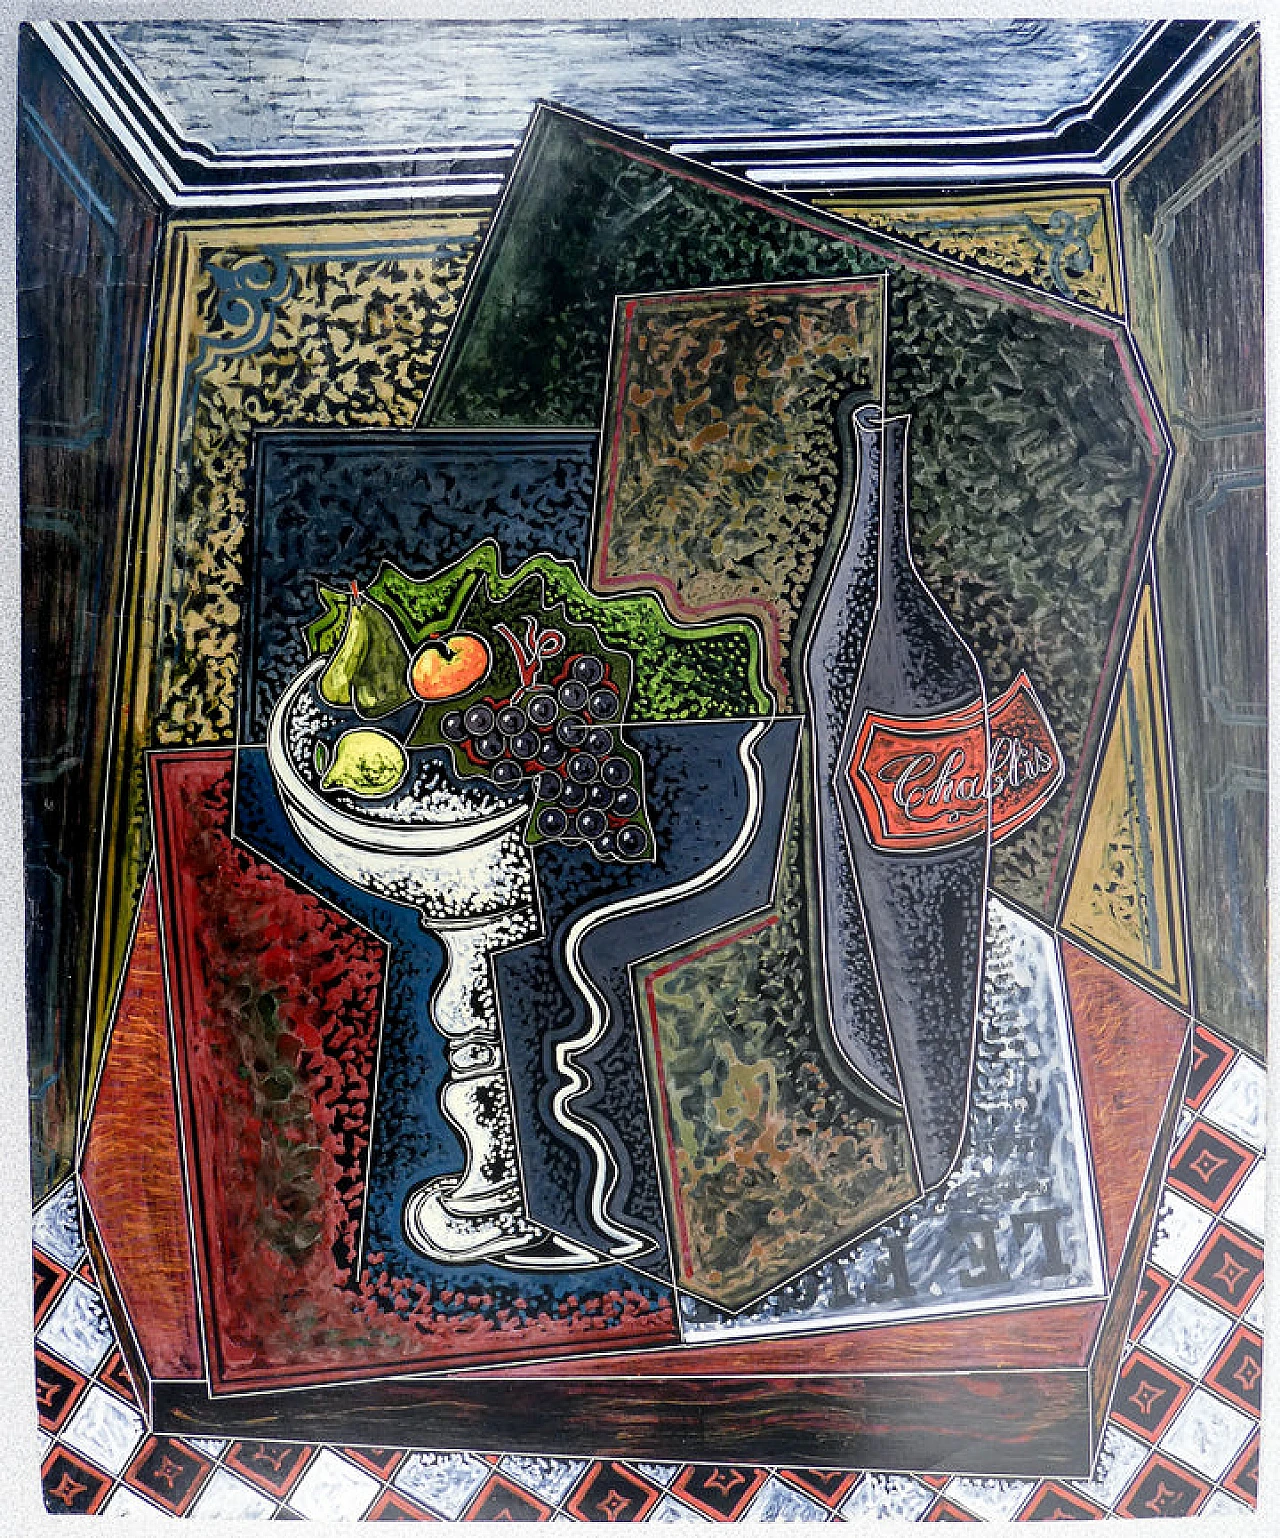 P. Oriani, Objets sur la table, encaustic painting on cardboard, 1930 2